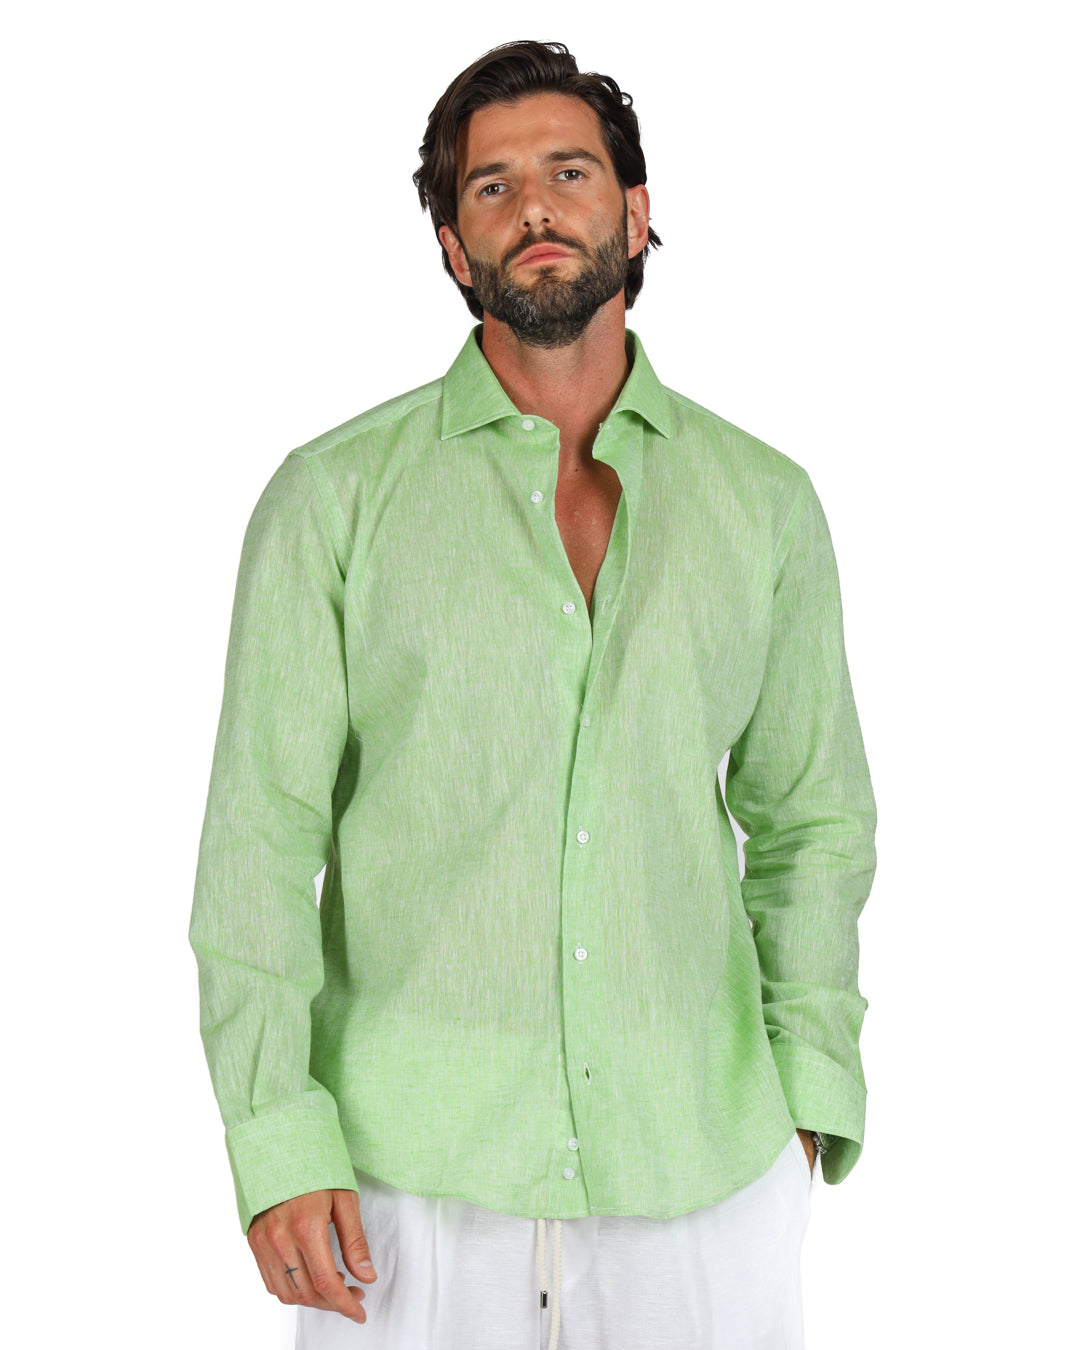 Praiano - Camicia classica verde mela in lino